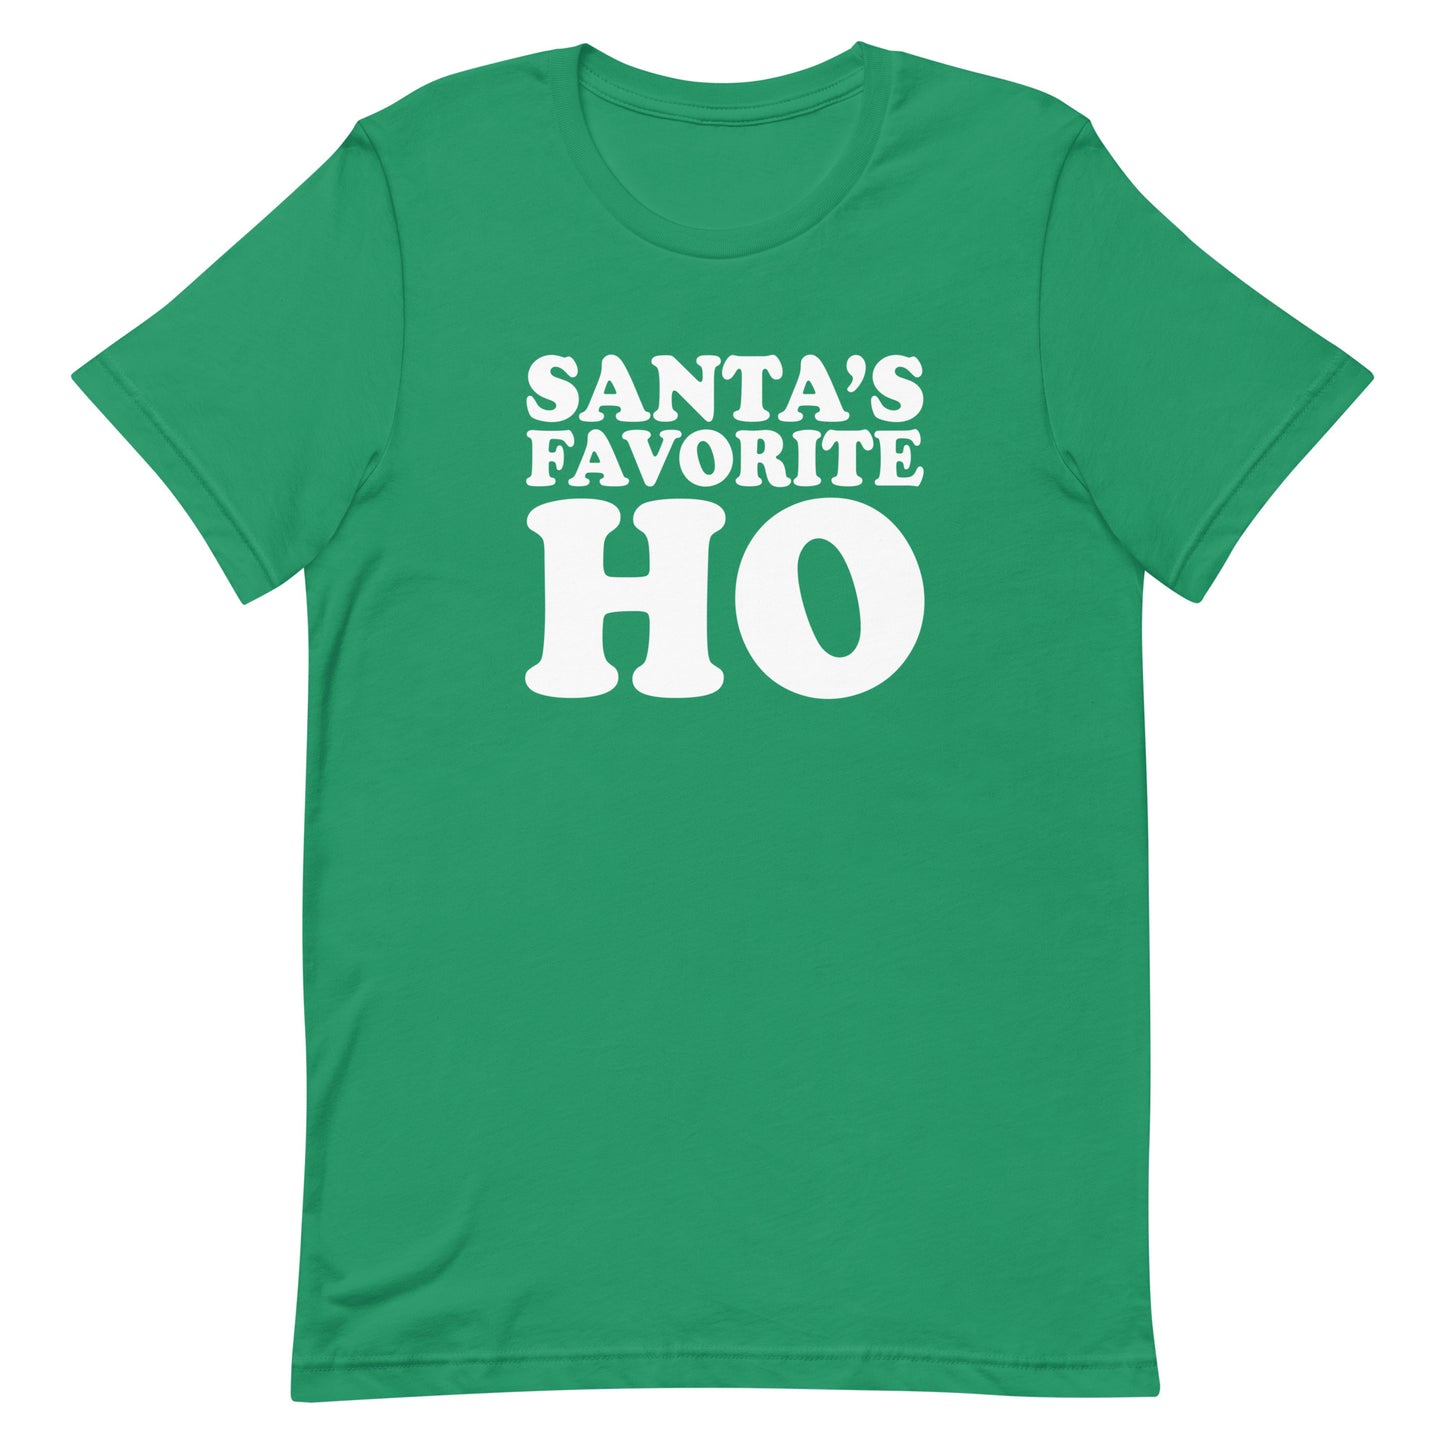 Santa's Favorite Ho t-shirt